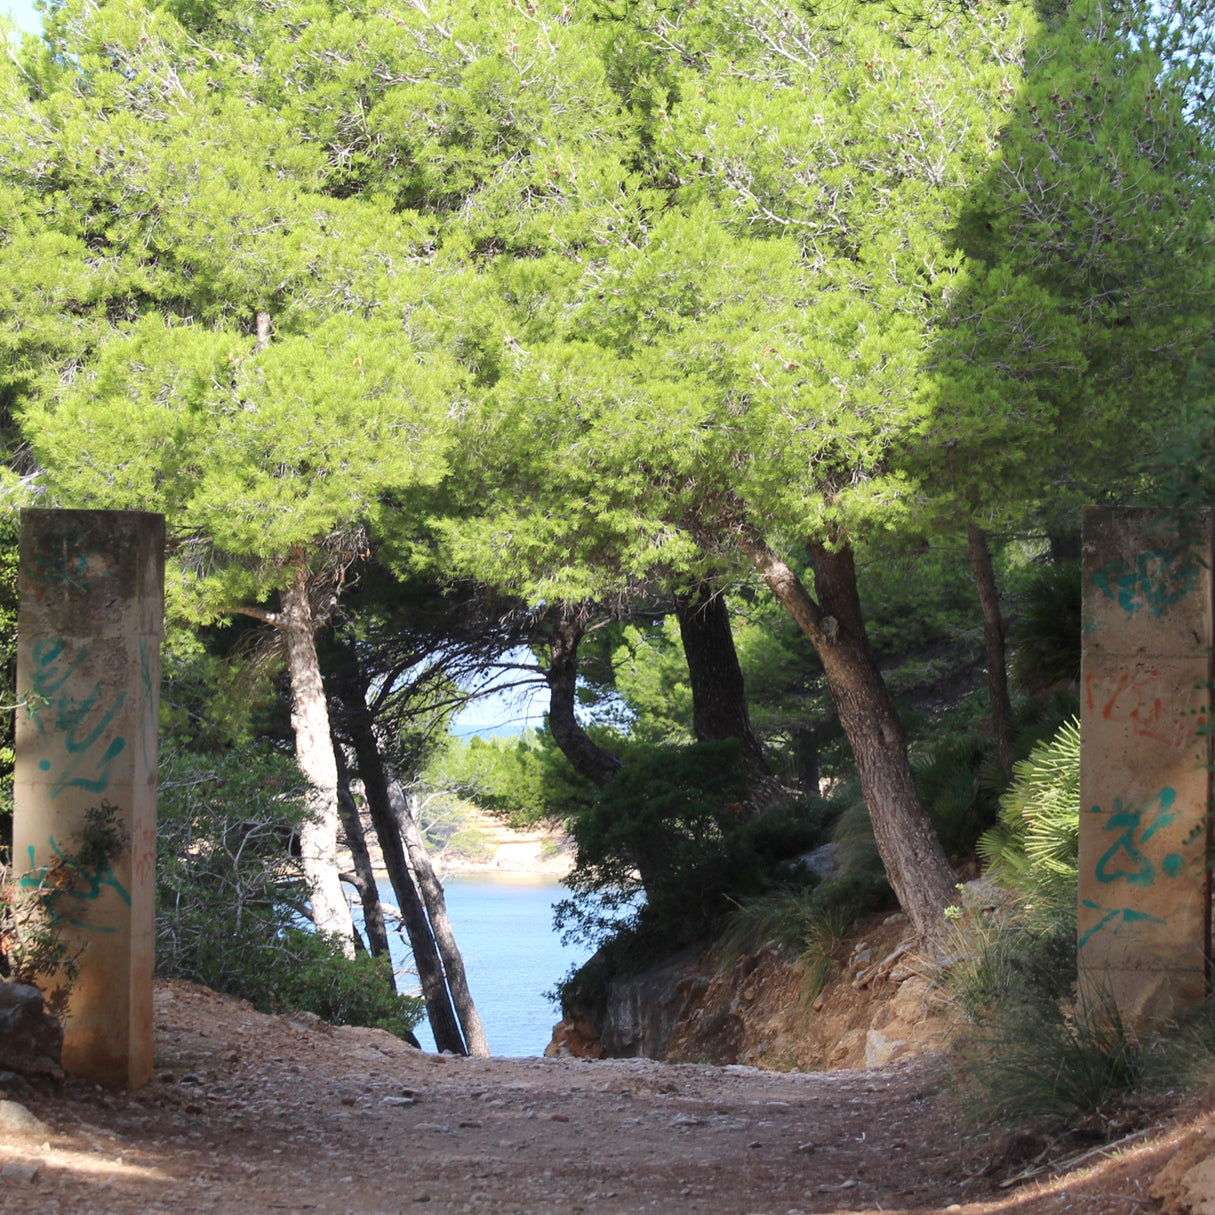 Mallorca Run & Hike | Laufen und Wandern